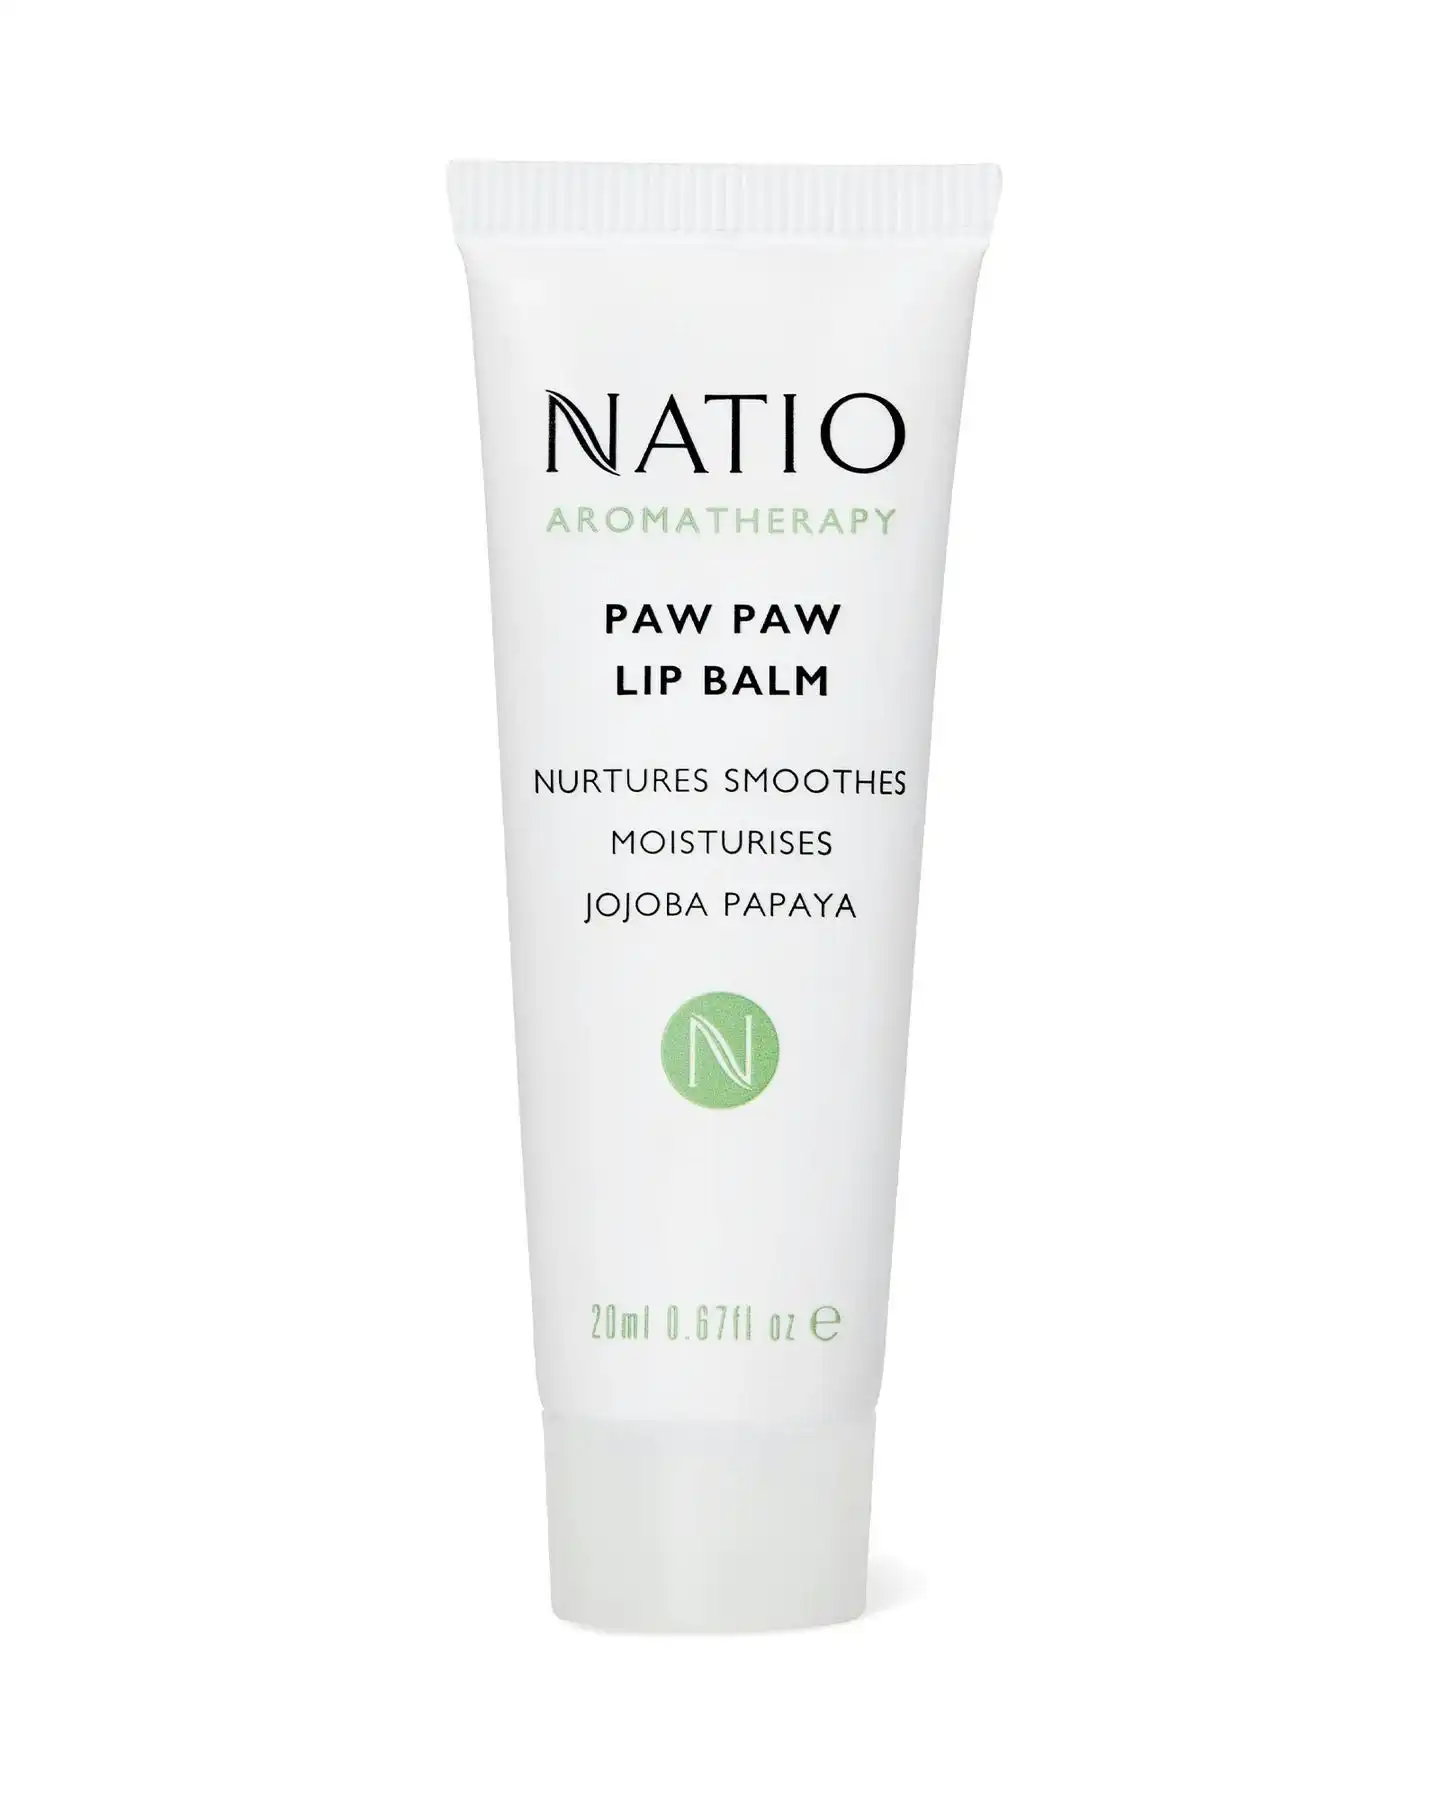 Natio Aromatherapy Paw Paw Lip Balm 20ml